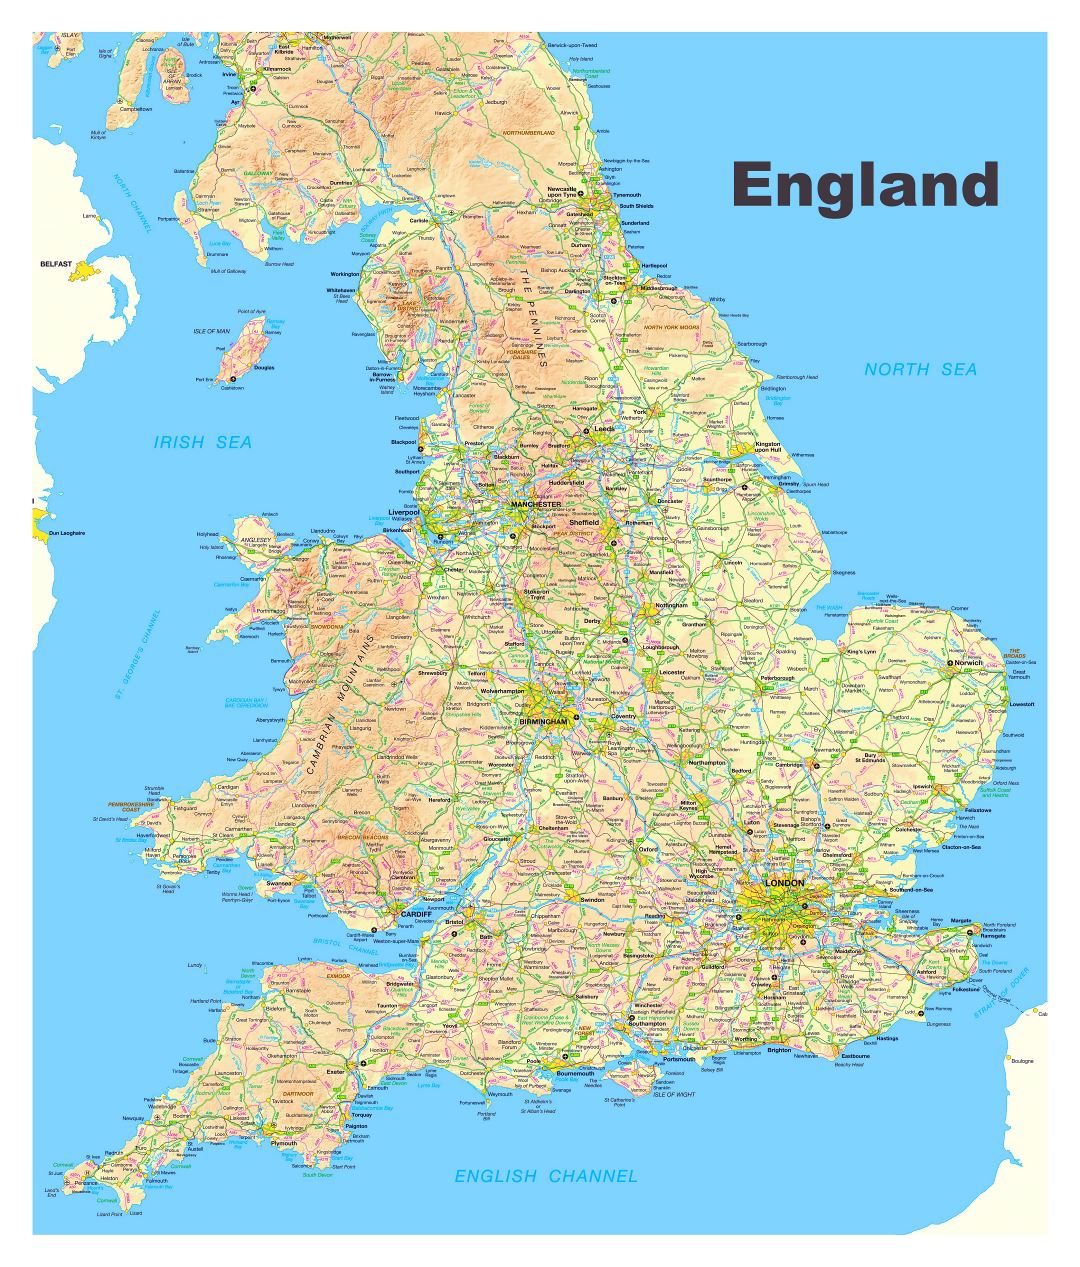 Большая карта Англии с дорогами, городами и другими пометками